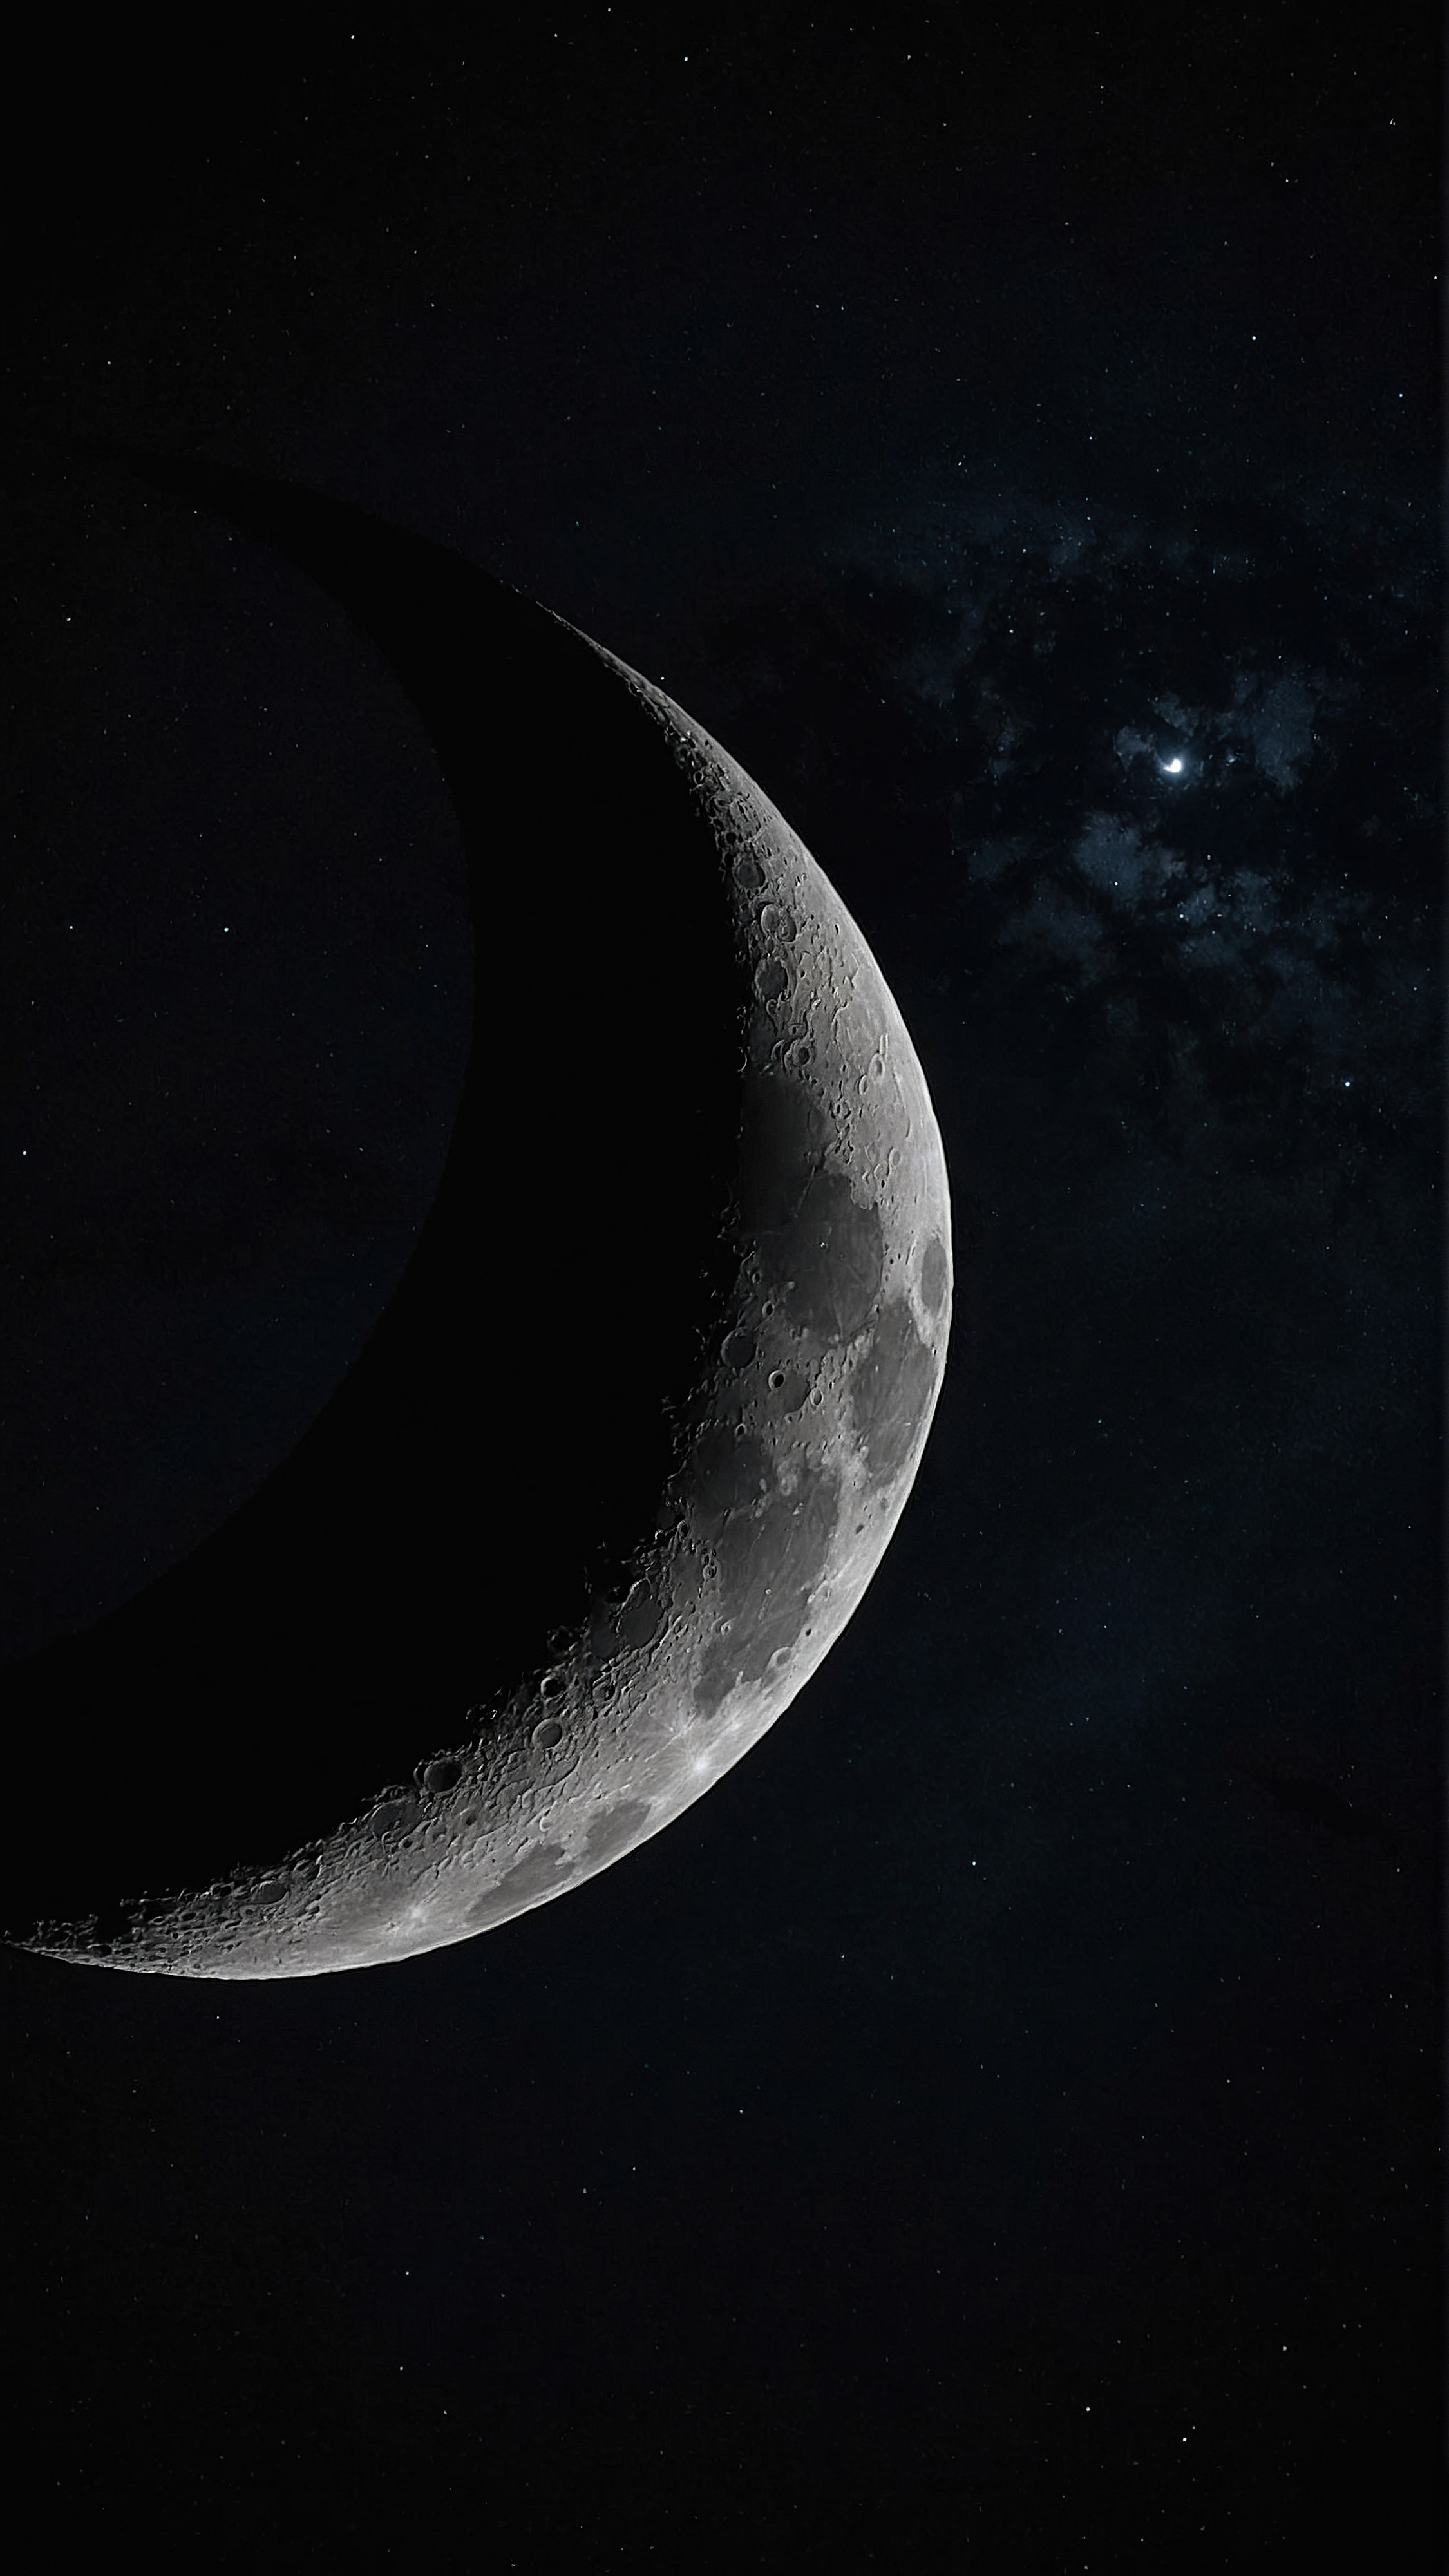 Découvrez le charme de l'espace à travers un fond d'écran iPhone entièrement noir, présentant un croissant de lune détaillé, illuminé contre le fond sombre de l'espace.